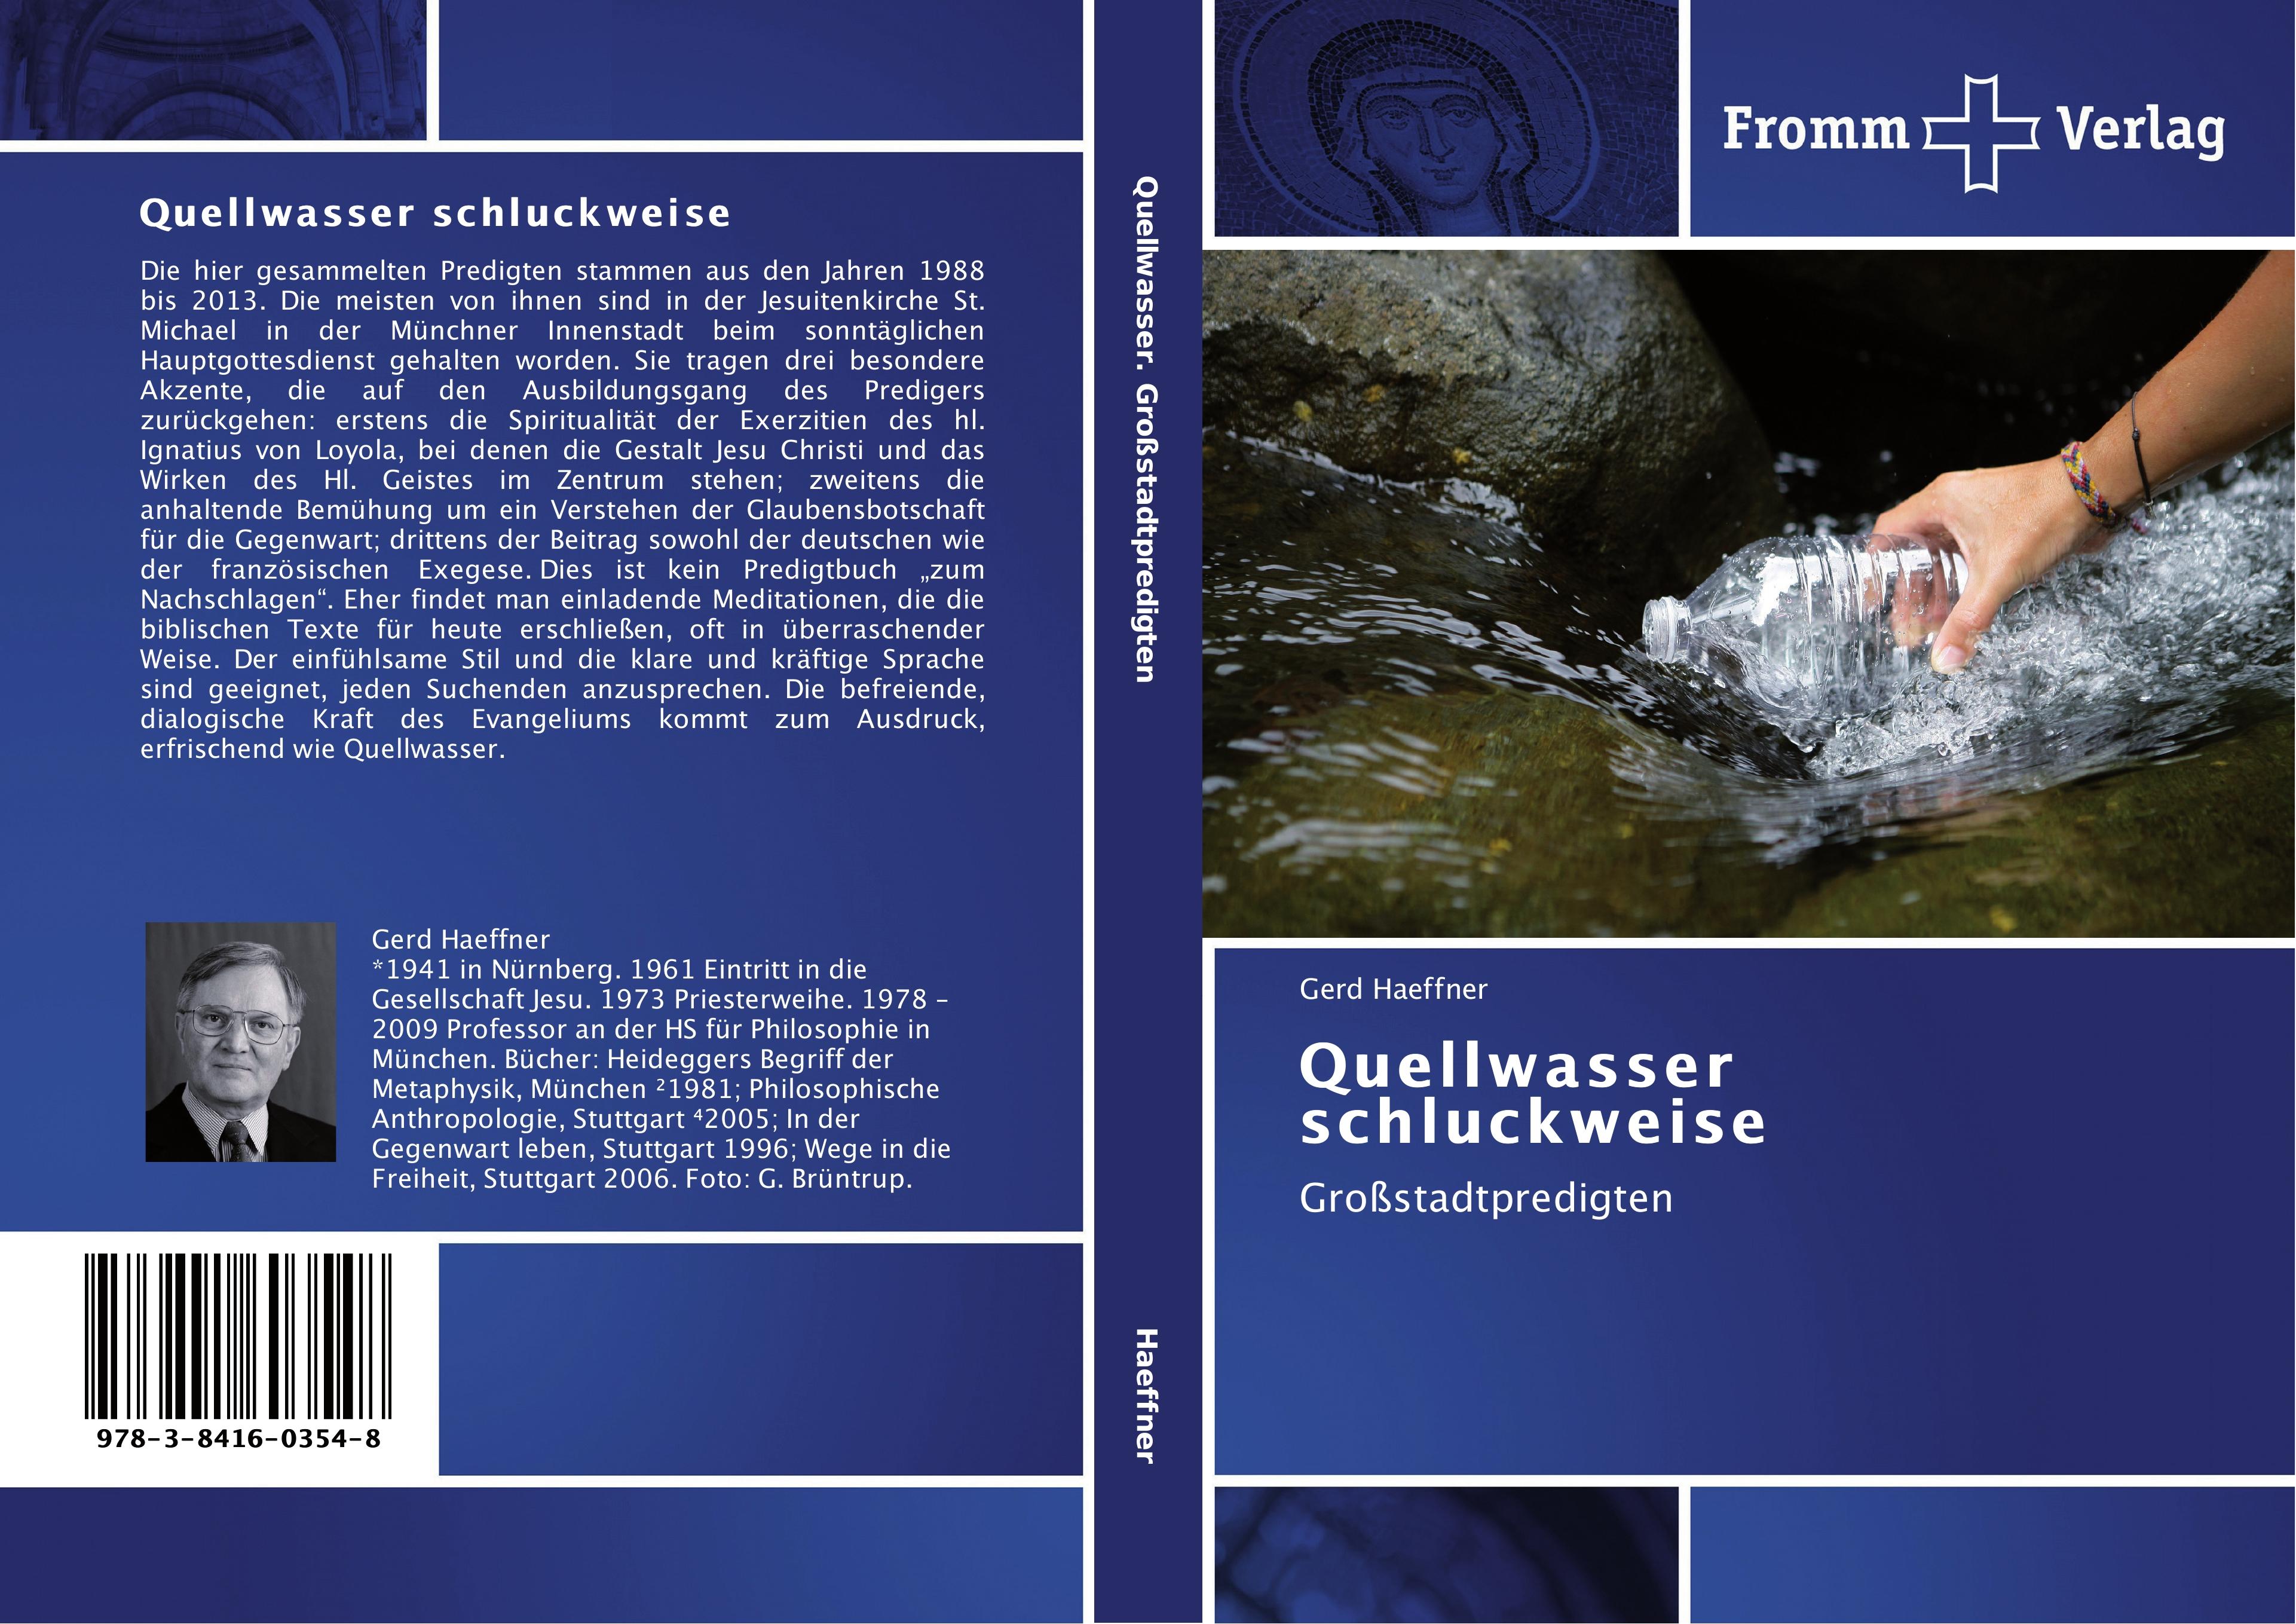 Quellwasser schluckweise / Großstadtpredigten / Gerd Haeffner / Taschenbuch / Paperback / 256 S. / Deutsch / 2014 / Fromm Verlag / EAN 9783841603548 - Haeffner, Gerd